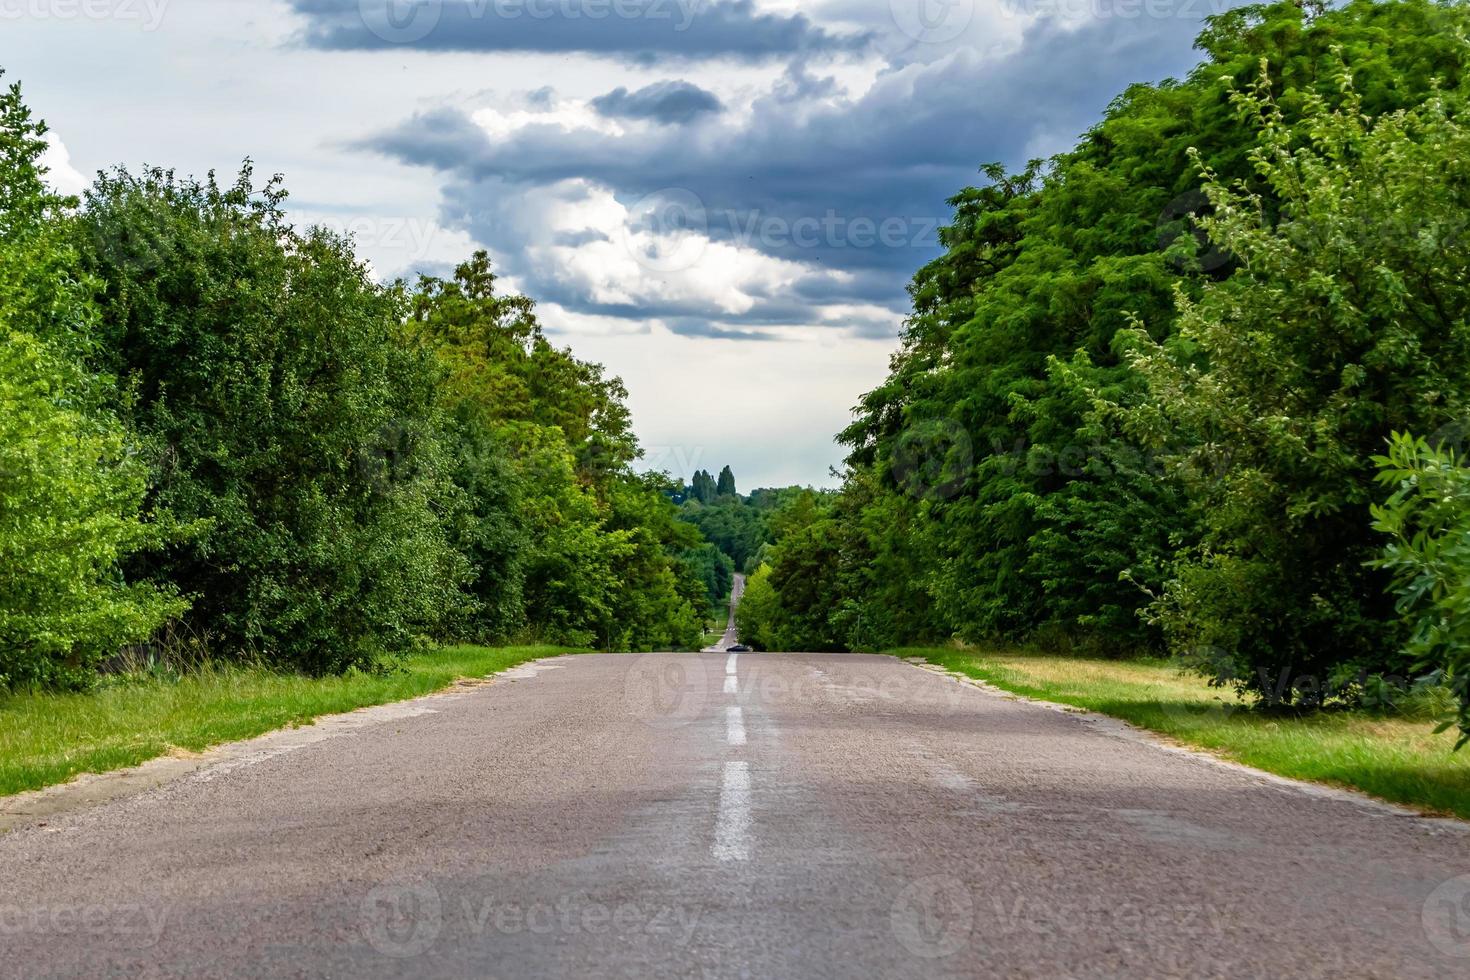 bella strada asfaltata vuota in campagna su sfondo colorato foto